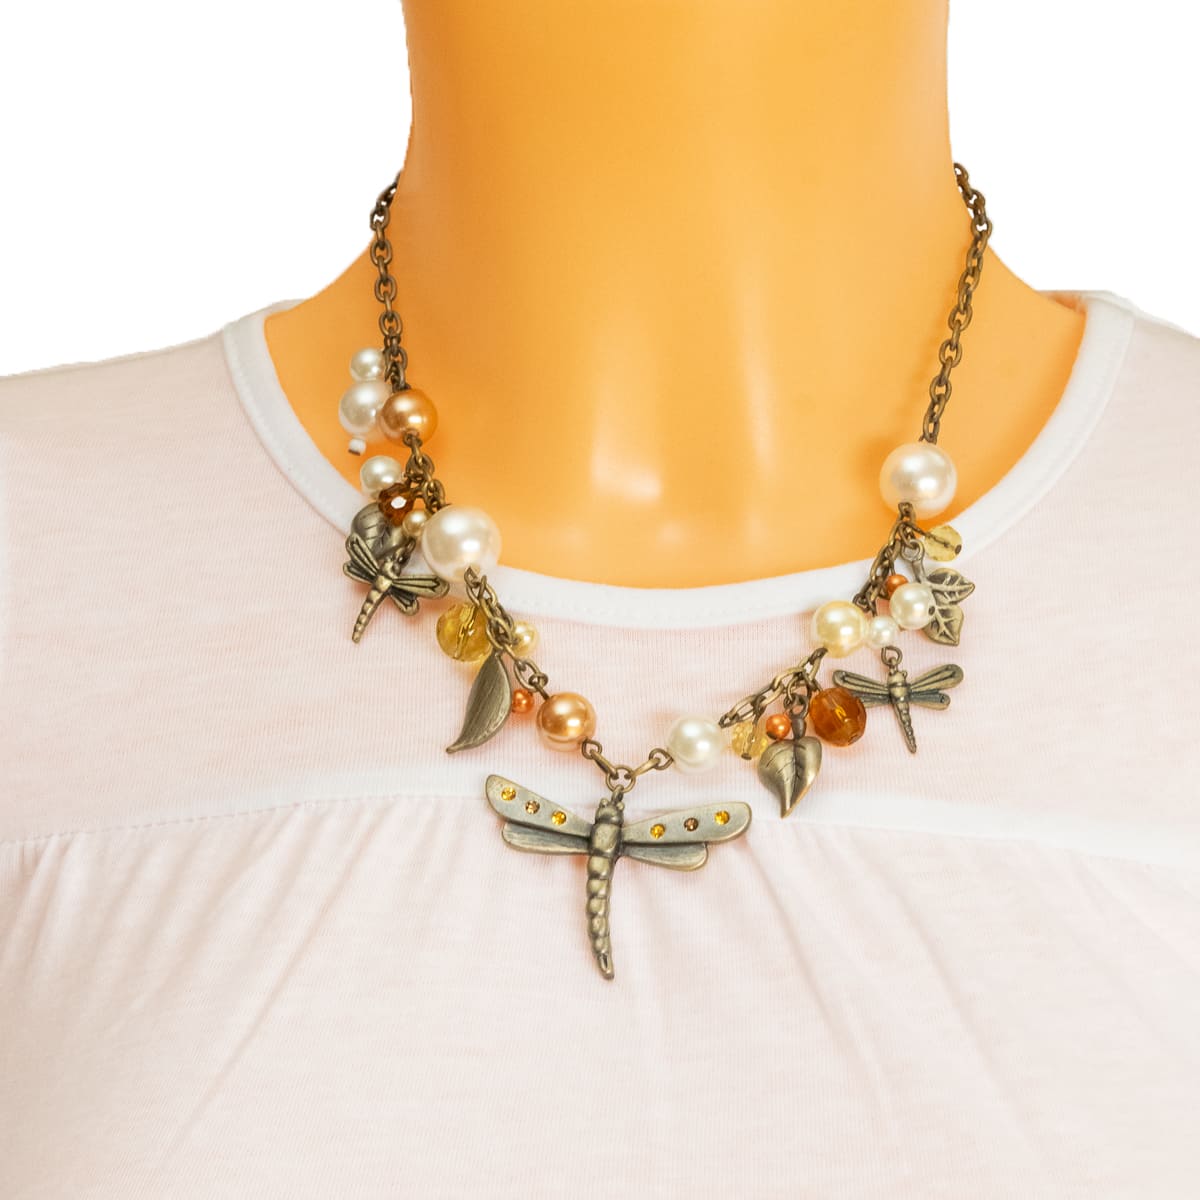 K.V. Fuchs Design Schmuck Damen Halskette in gold, kupfer mit Schmetterling, Perlen in gold, orange, weiß und Zirkonia in orange, topas »K-3001«